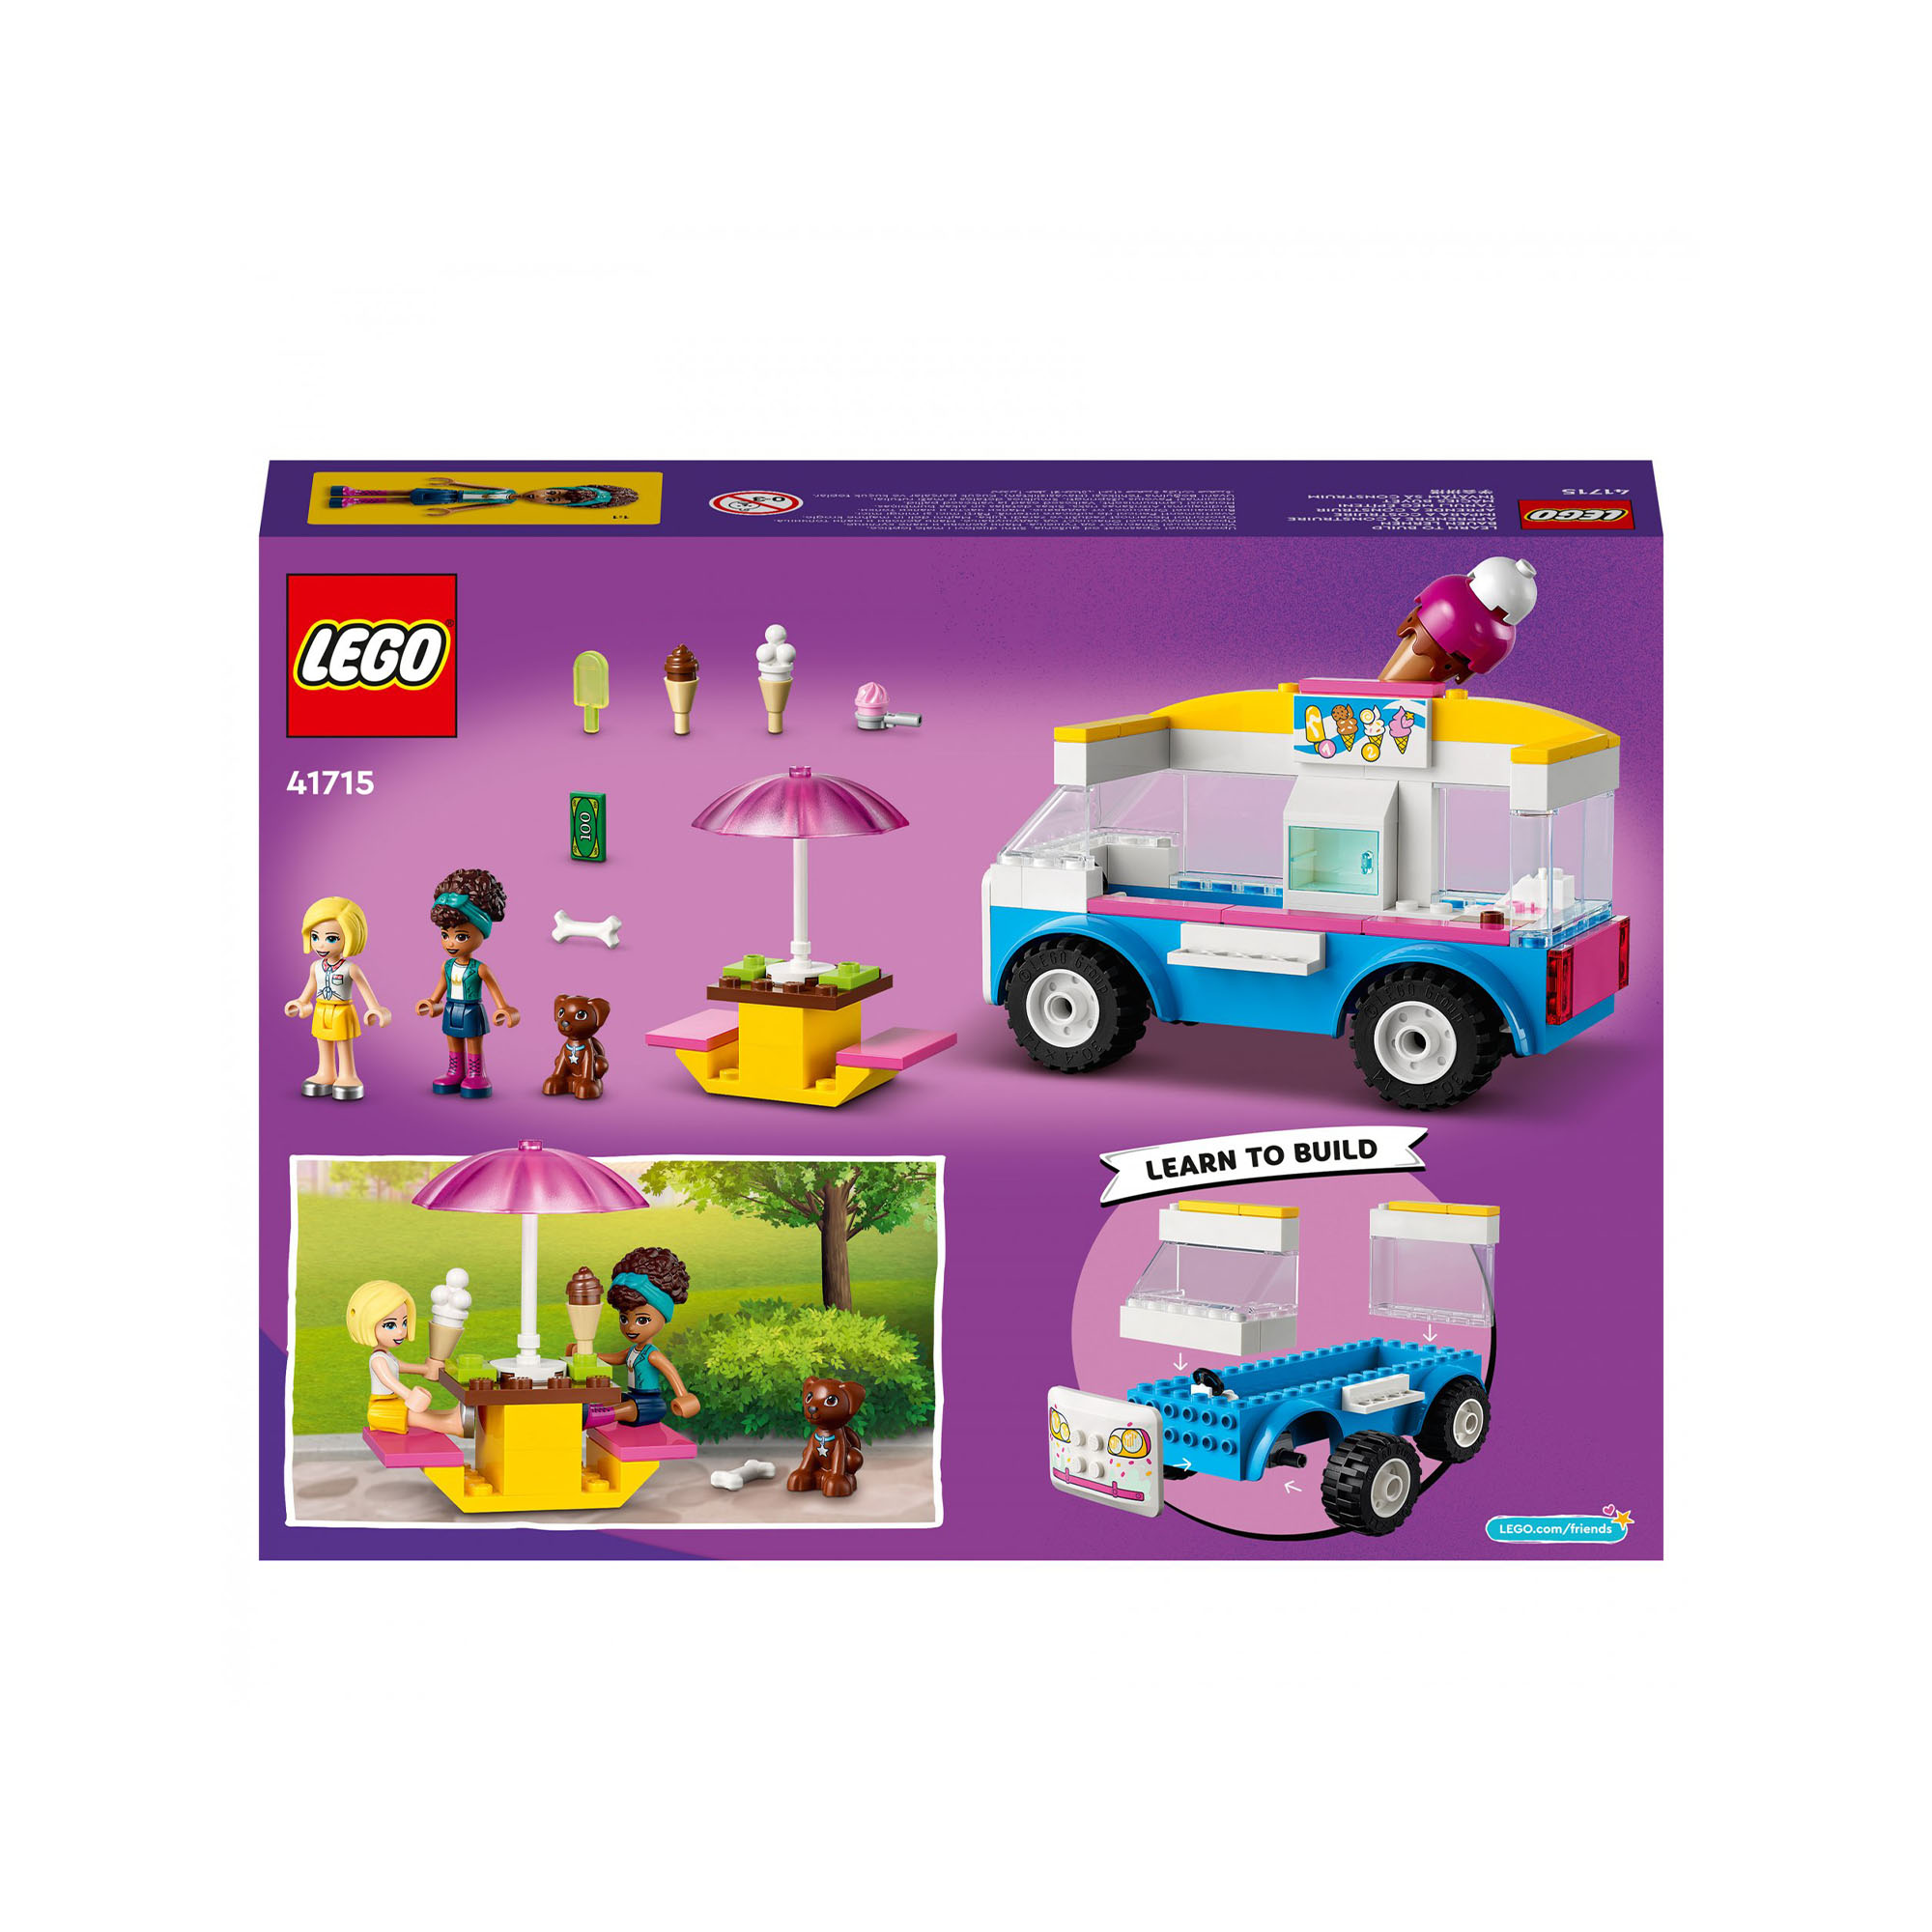 LEGO Friends Il Furgone dei Gelati, Set con Gelato, Cibo e Cane Giocattolo, con 41715, , large